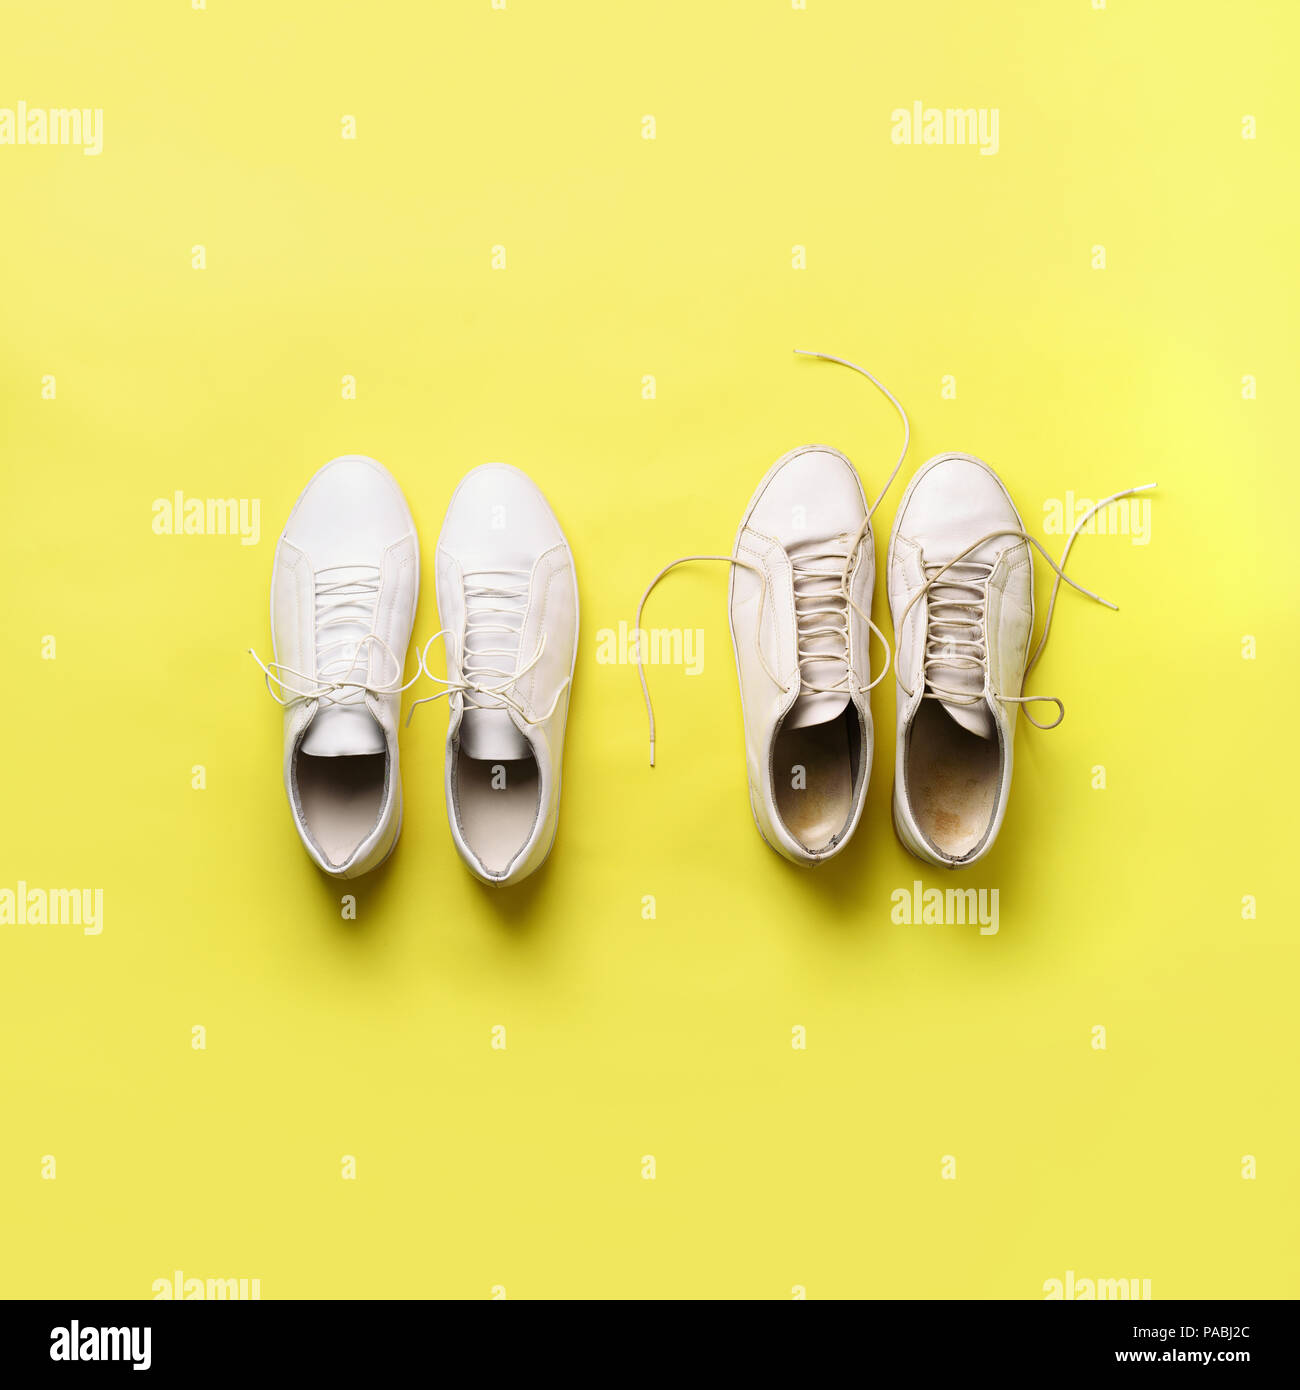 Dreckigen sneakers vs neue weiße Sneakers auf gelben Hintergrund. Trendige  Schuhe. Platz crop. Ansicht von oben. Konzept der Erfahrung, Disziplin und  Chaos, ac Stockfotografie - Alamy